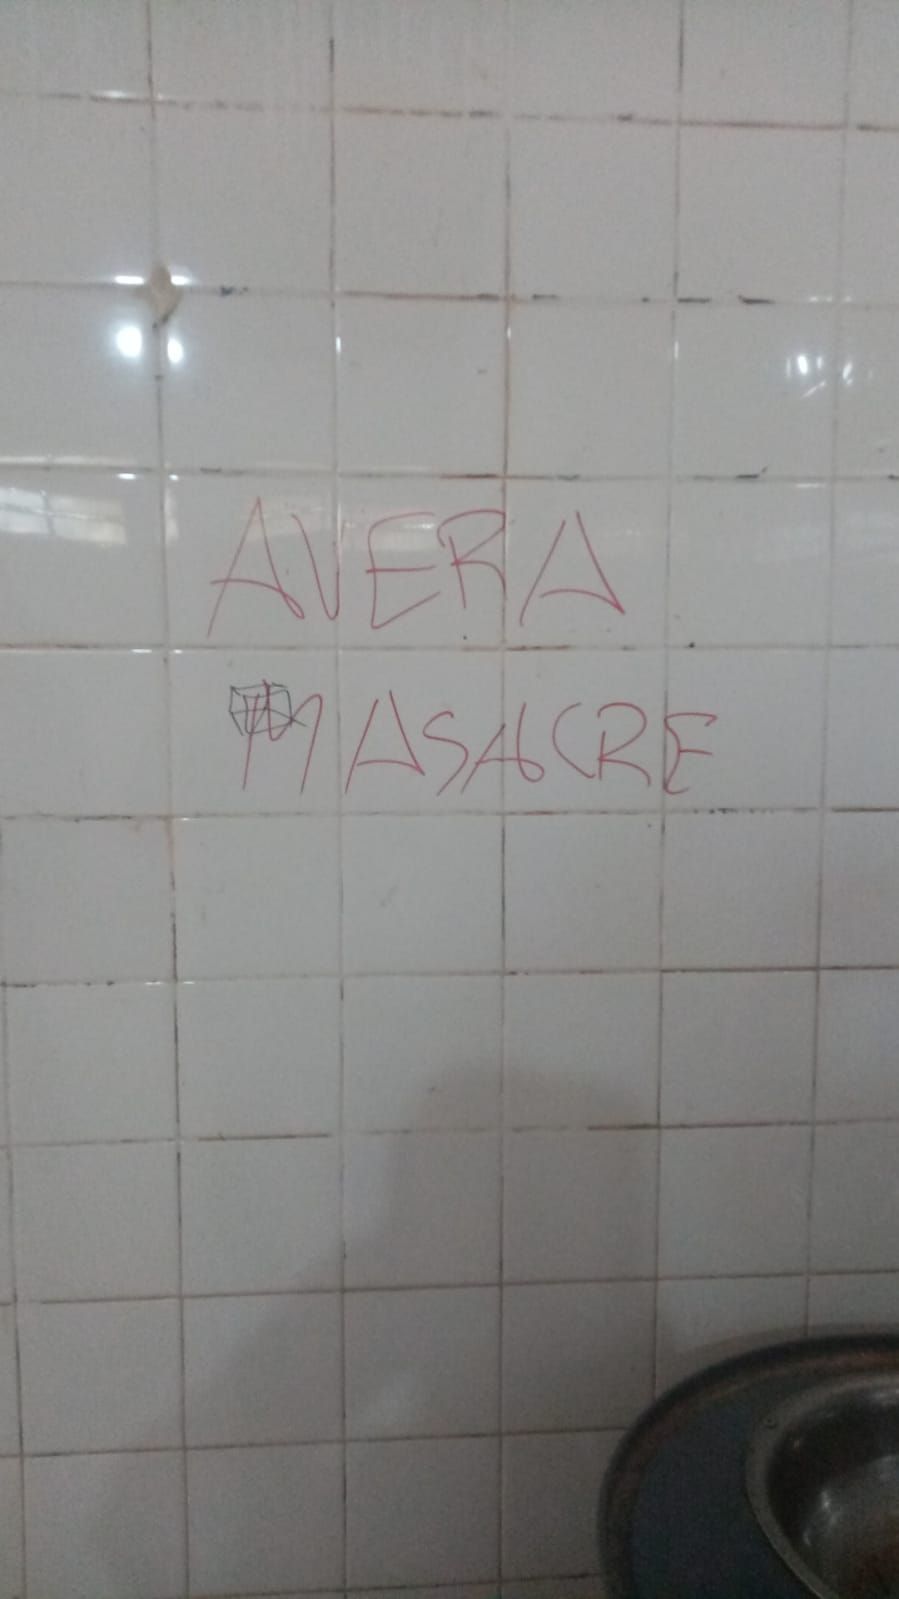 Escrito hallado en la pared del baño de varones en el colegio, anunciando la presunta matanza.